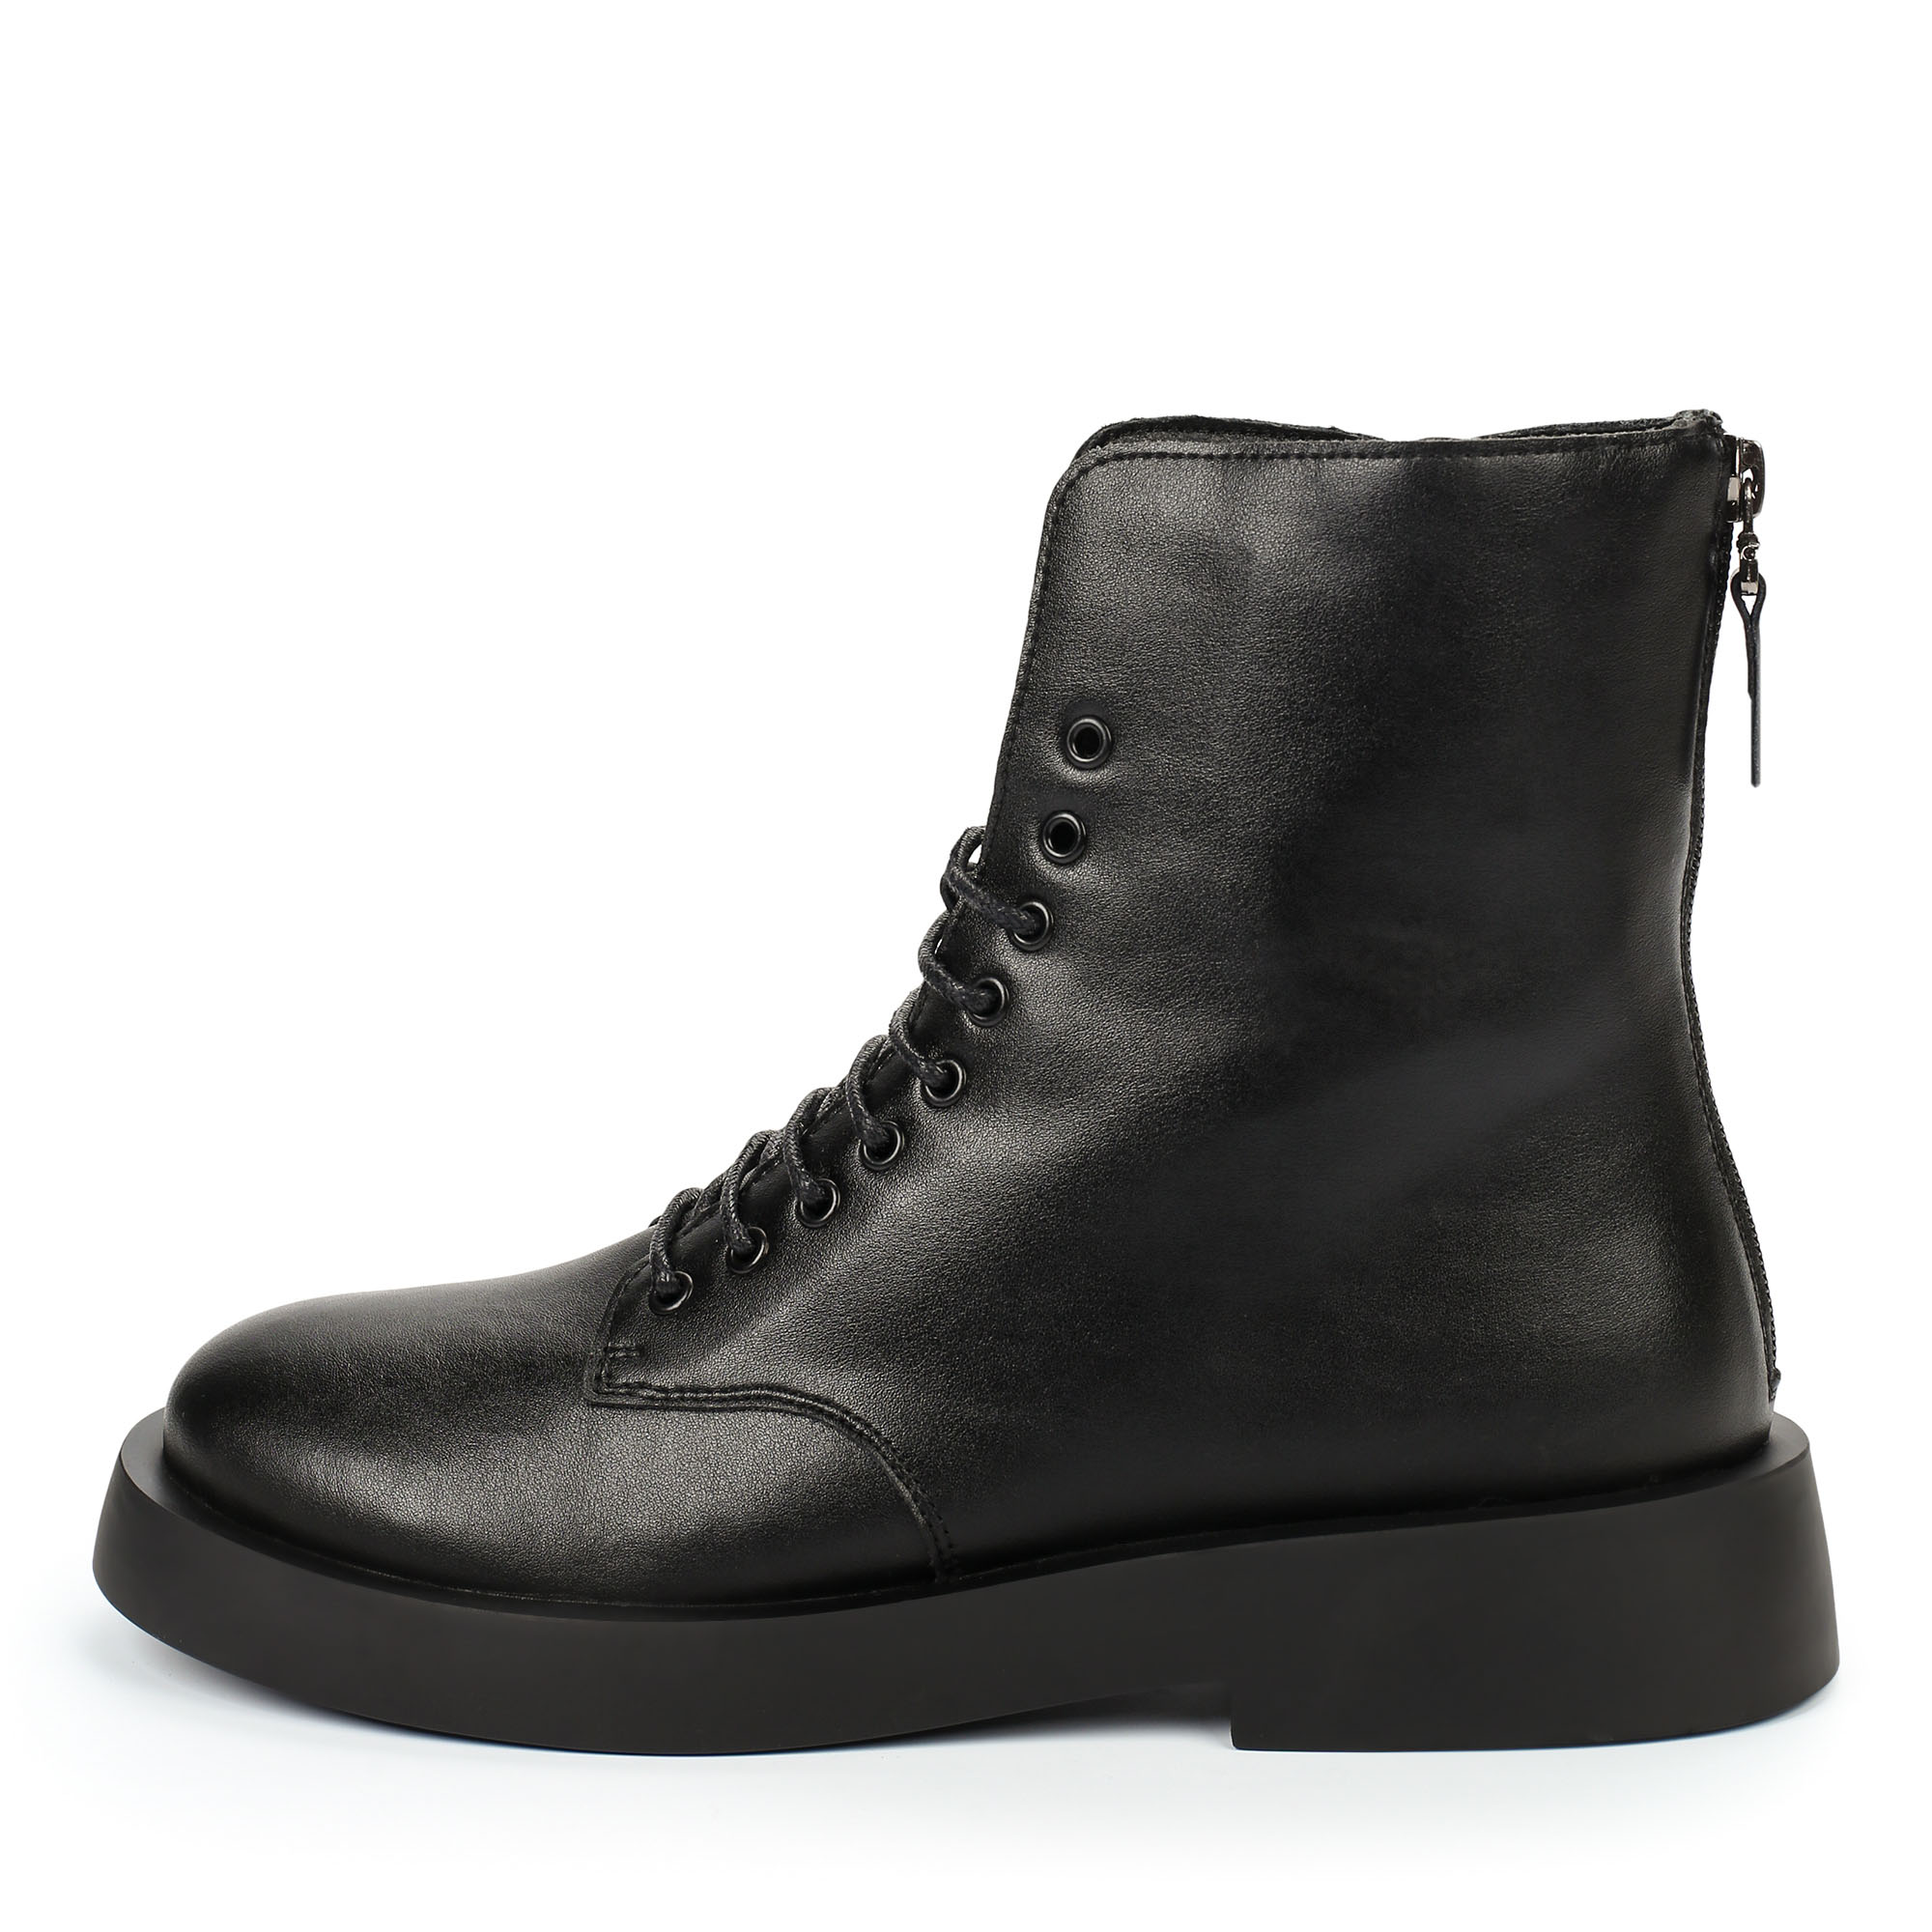 Ботинки Thomas Munz 025-740A-2602, цвет черный, размер 37 - фото 1